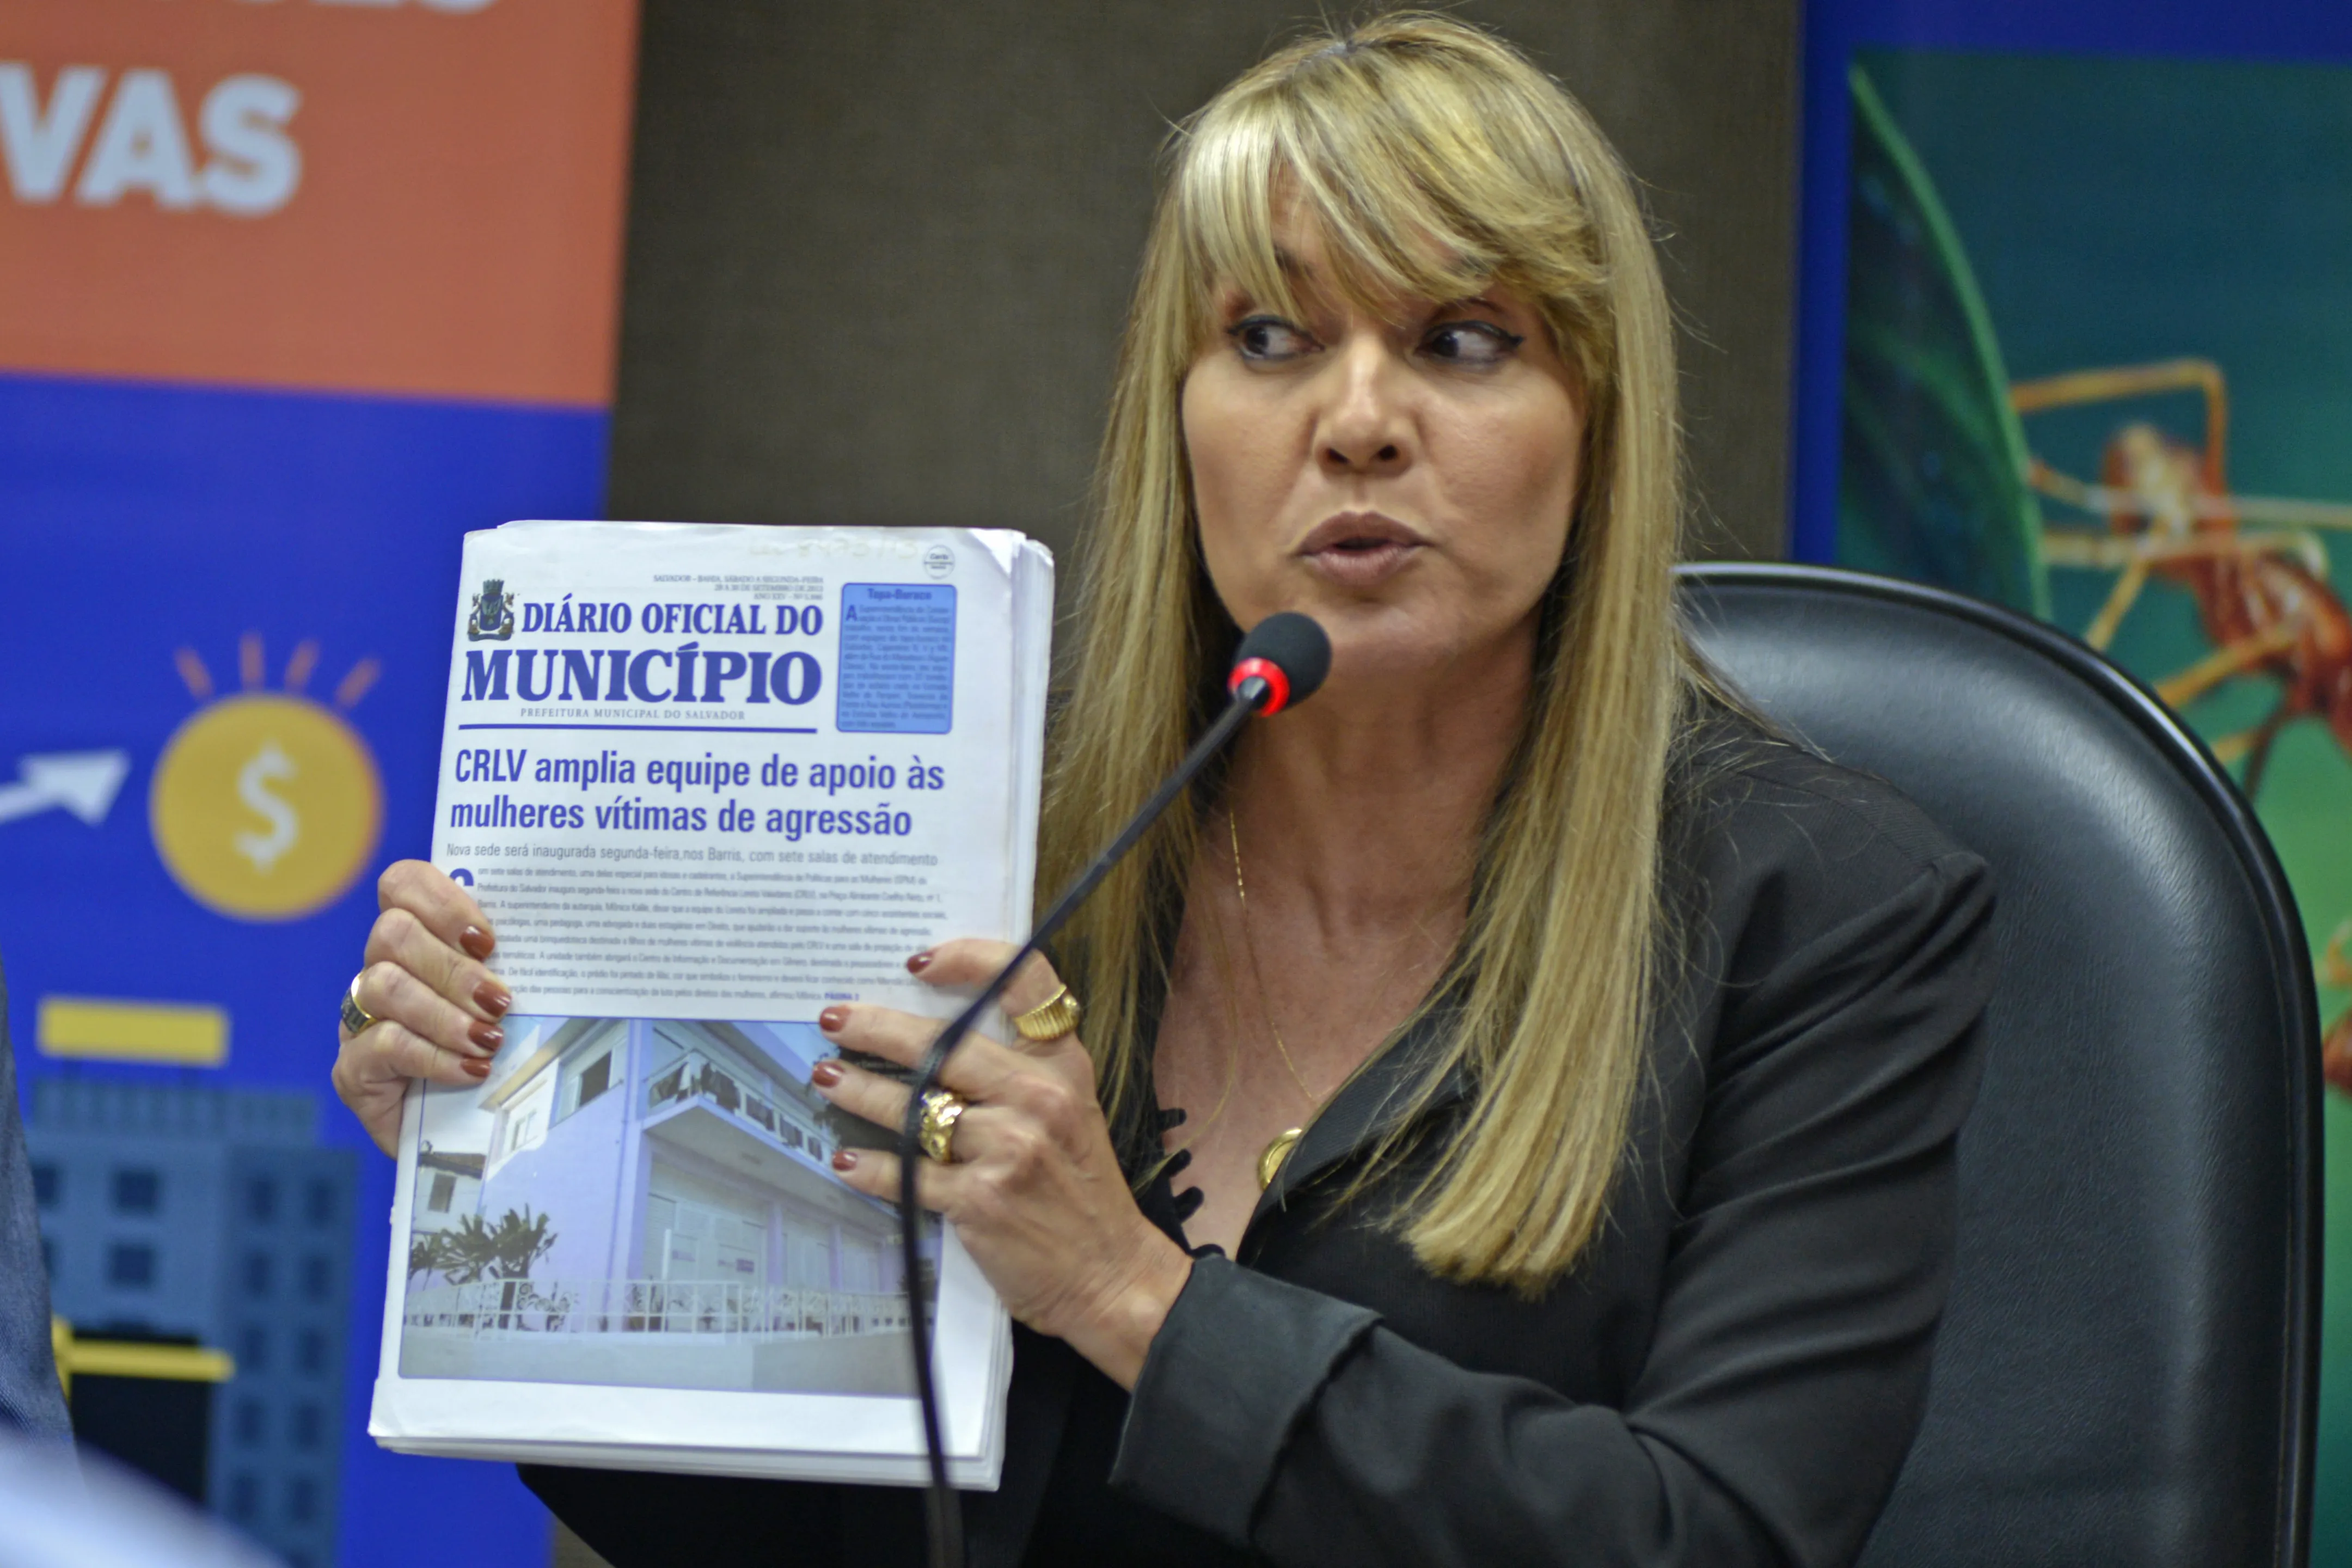 Karla Borges afirma que não foi apresentada nenhuma justificativa para o aumento, o que fere a lei